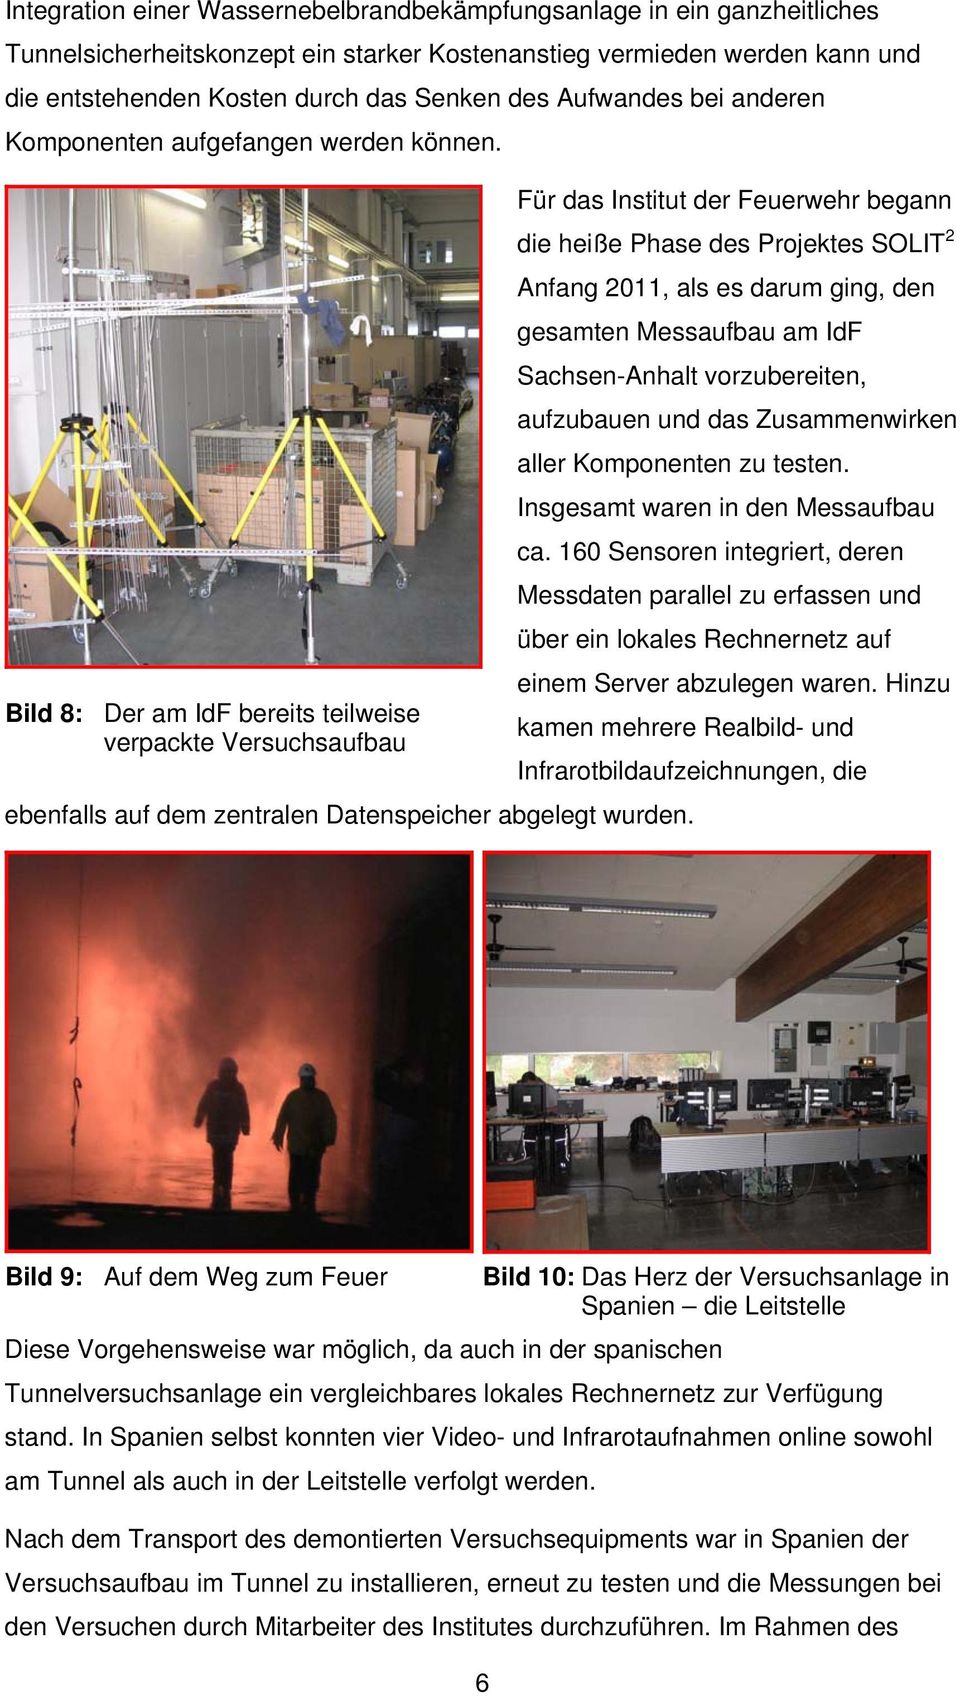 Für das Institut der Feuerwehr begann die heiße Phase des Projektes SOLIT 2 Anfang 2011, als es darum ging, den gesamten Messaufbau am IdF Sachsen-Anhalt vorzubereiten, aufzubauen und das